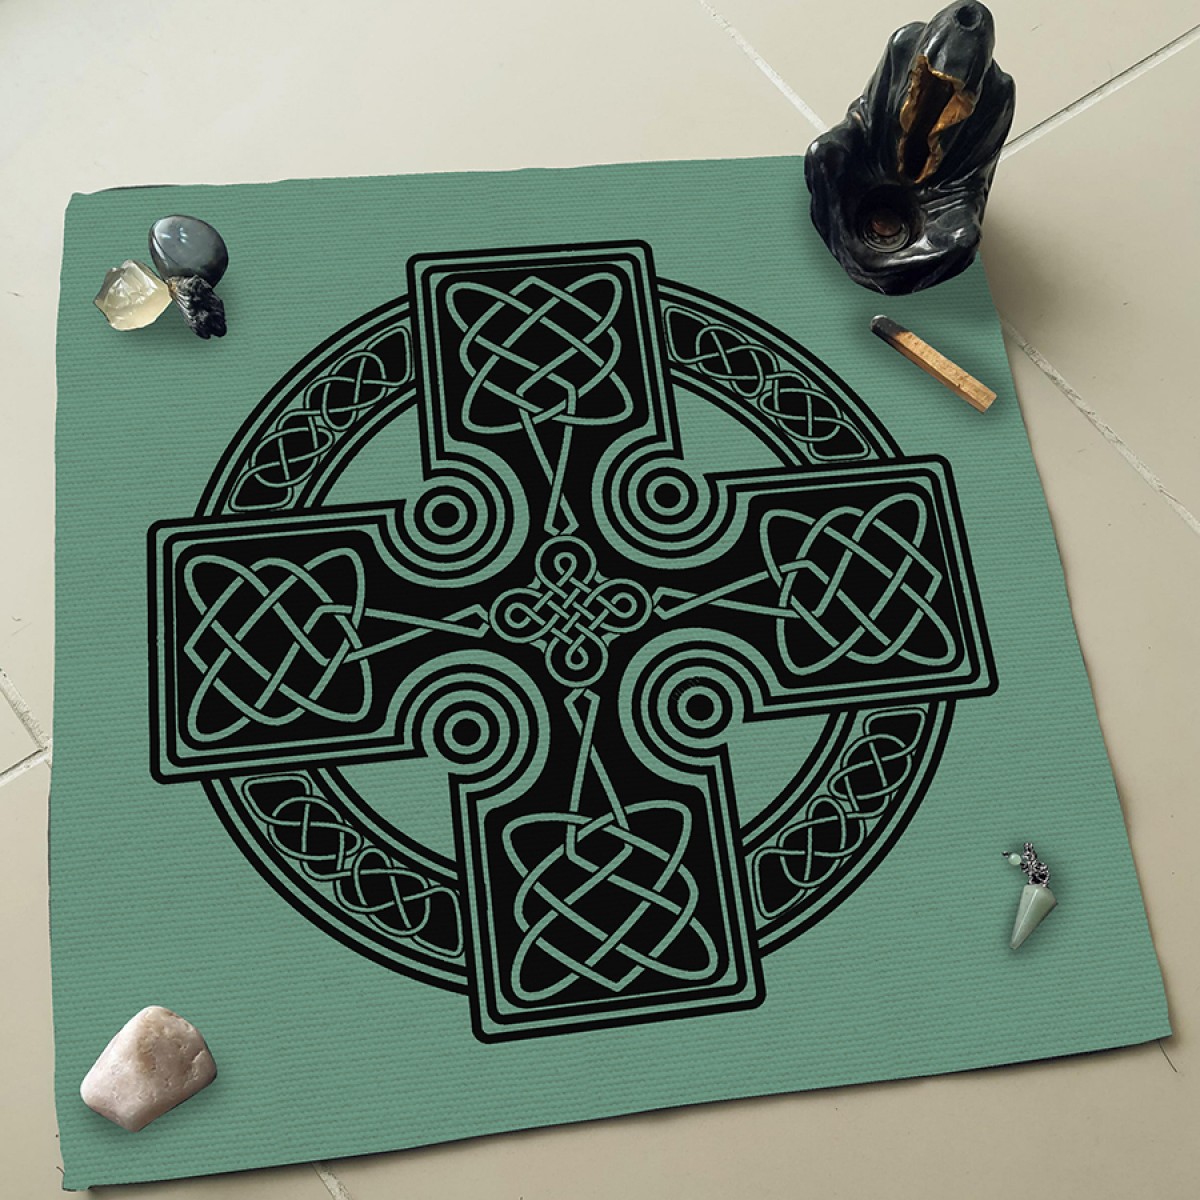 Celt Desen Altar - Sunak - Tarot Açılım  Örtüsü